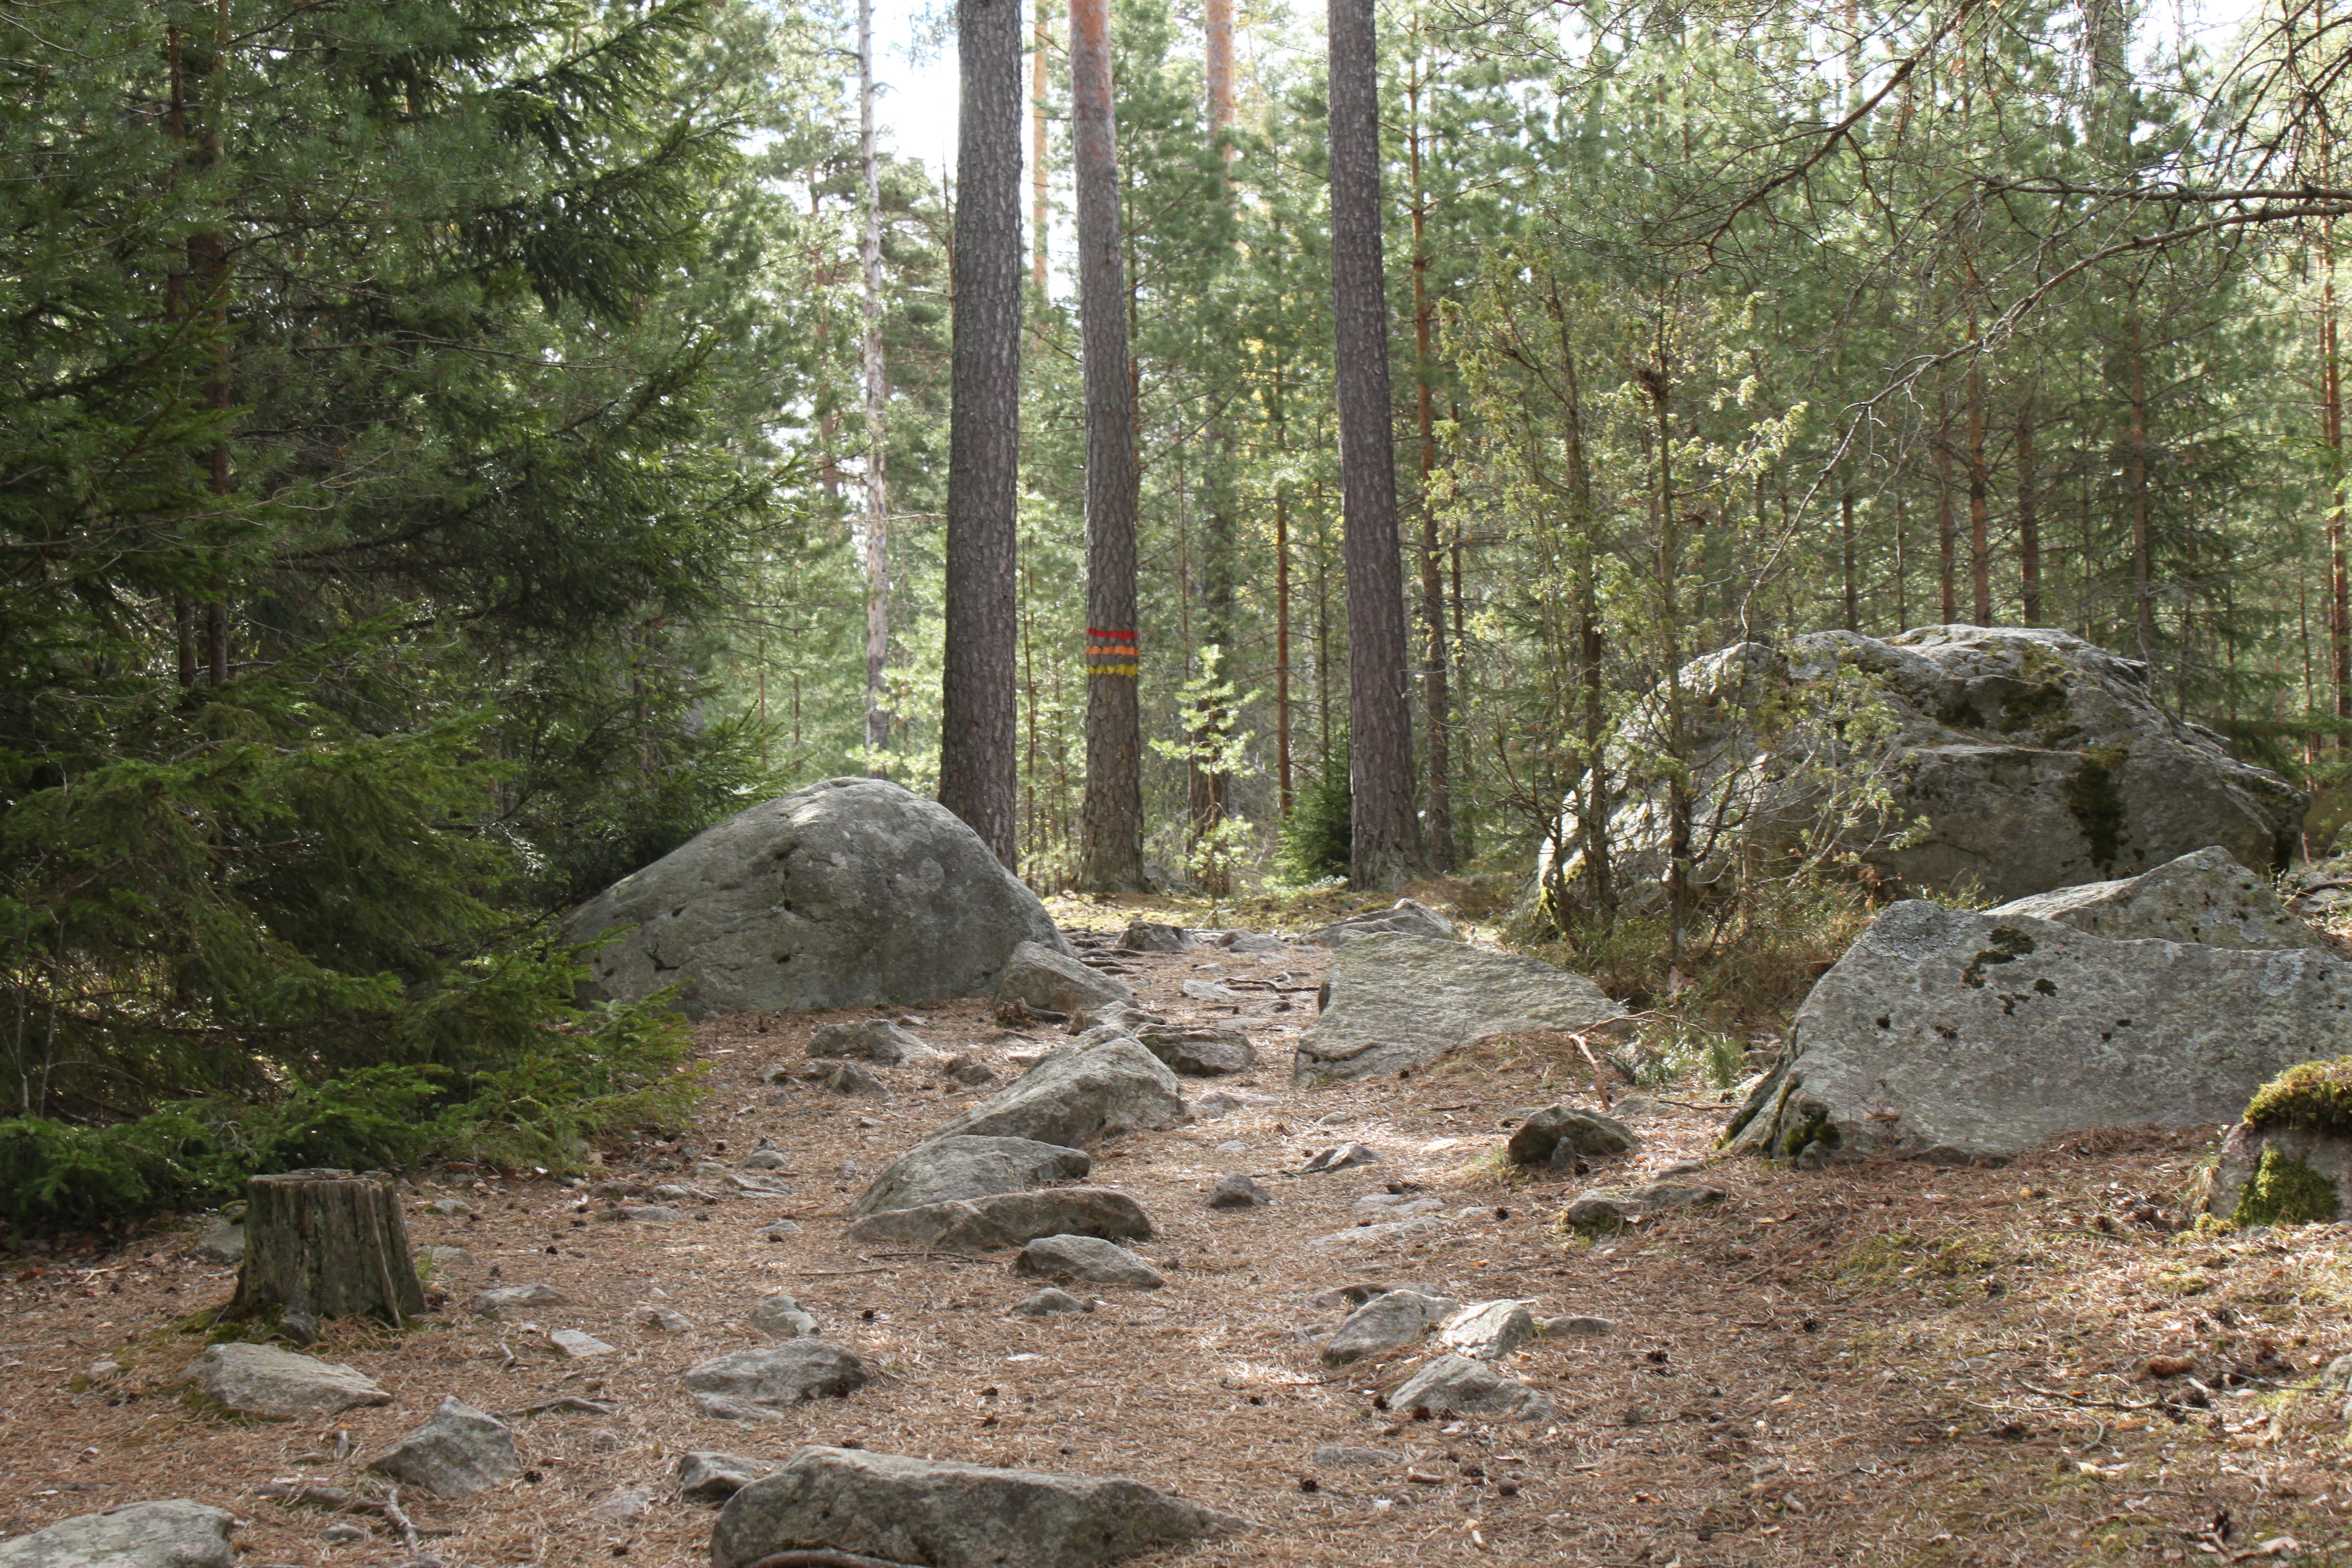 En bred men ojämn och stenig stig går genom tät skod. På en trädstam finns flera stigmarkeringar i olika färger.